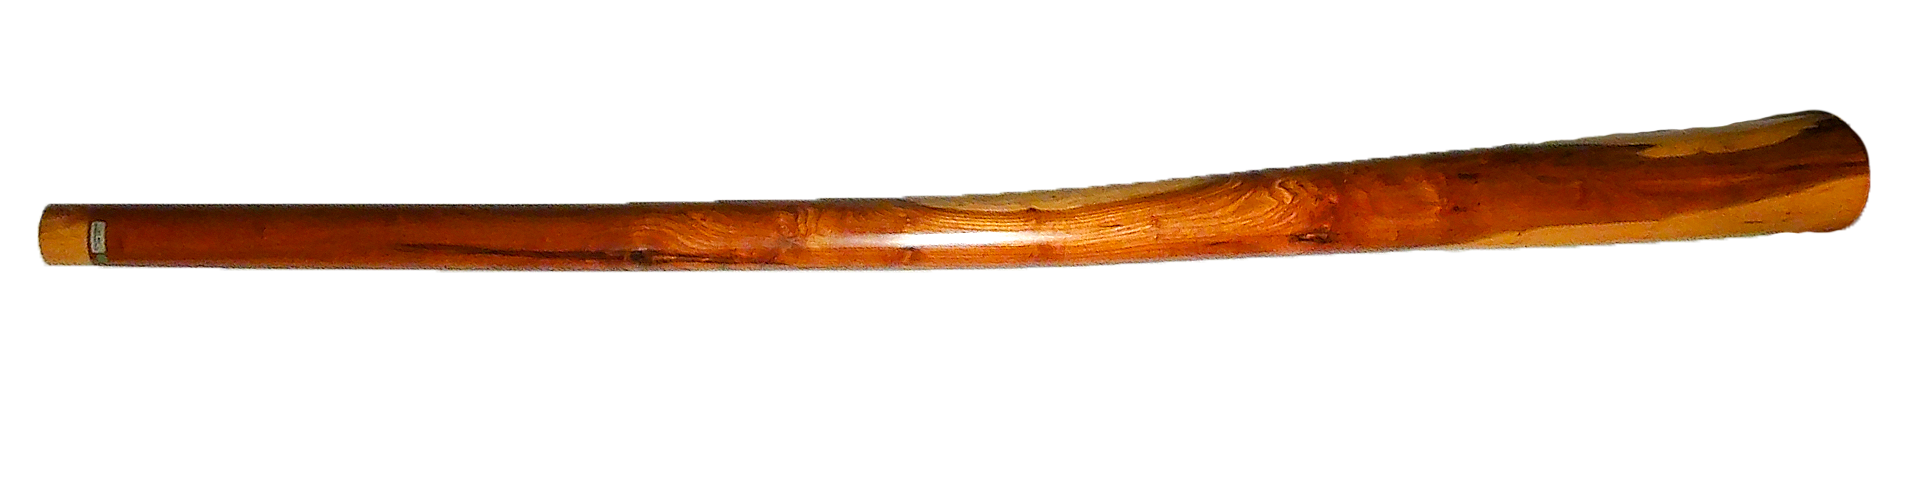 Didgeridoo PNG - 154506